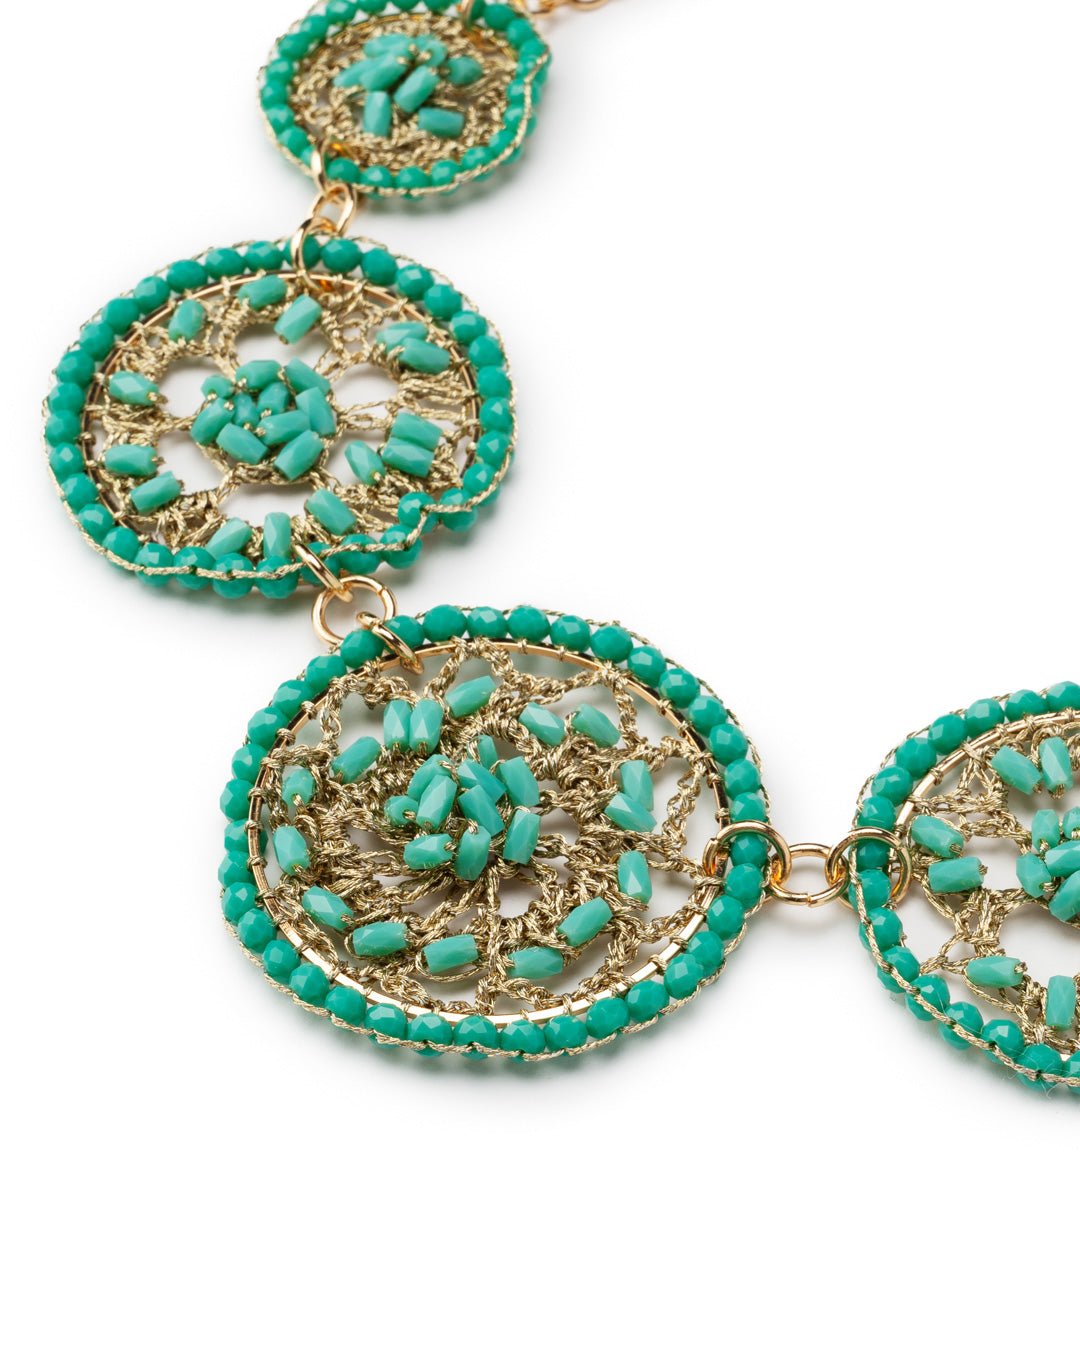 Collana girocollo a catena con cerchi in tessuto con microcristalli turchesi - Mya Accessories